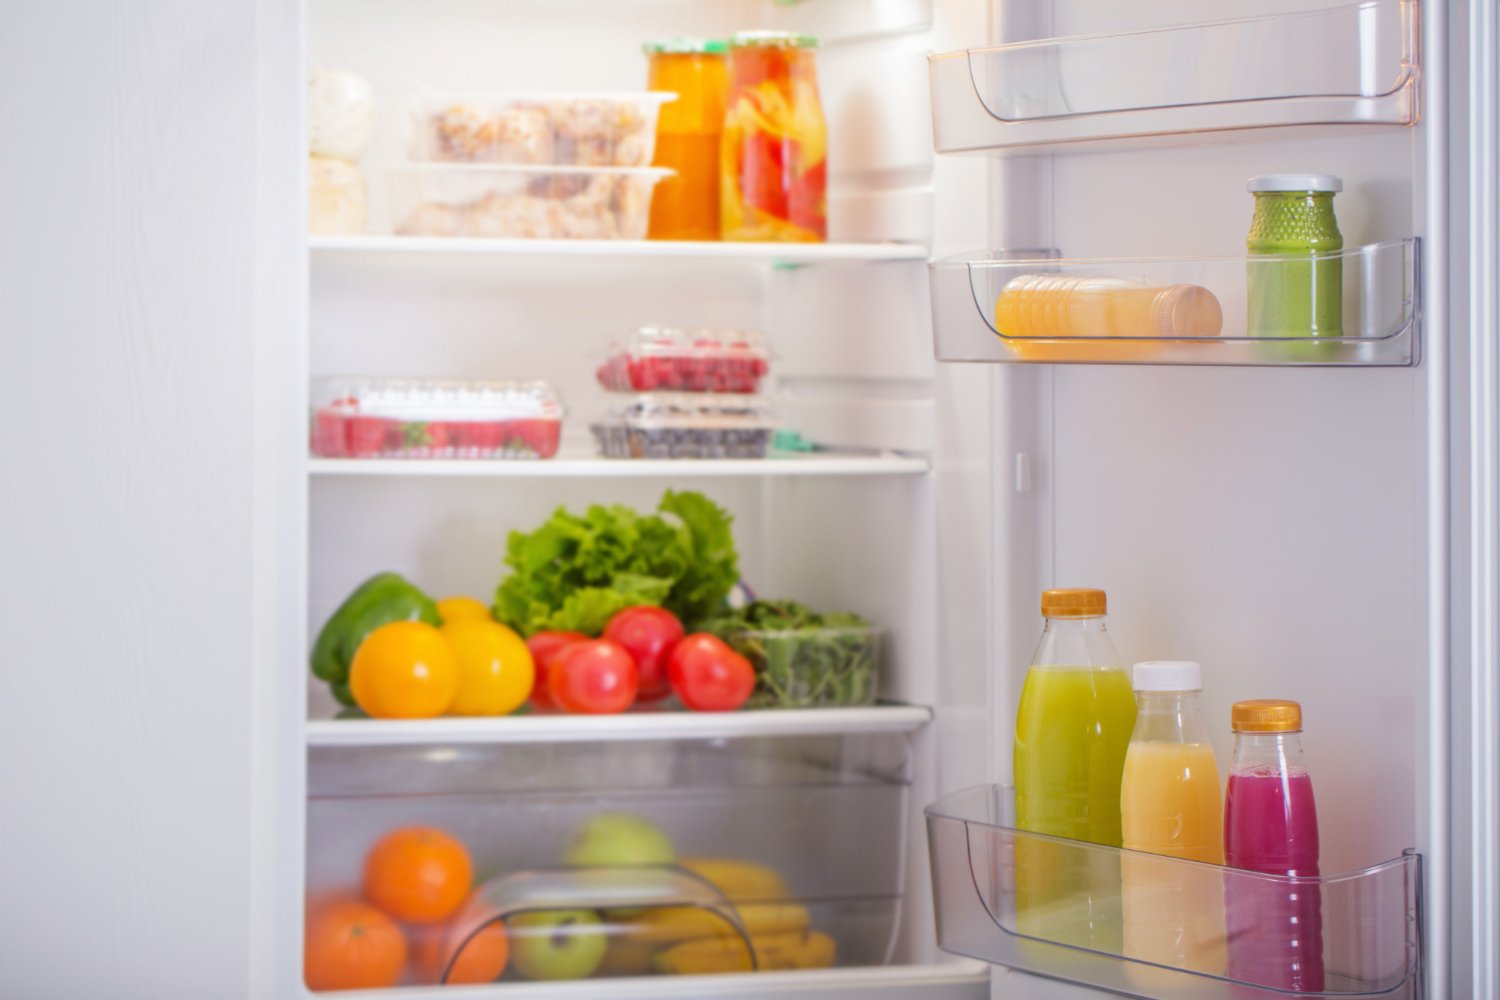 Aprenda a eliminar cheiros indesejados de sua geladeira